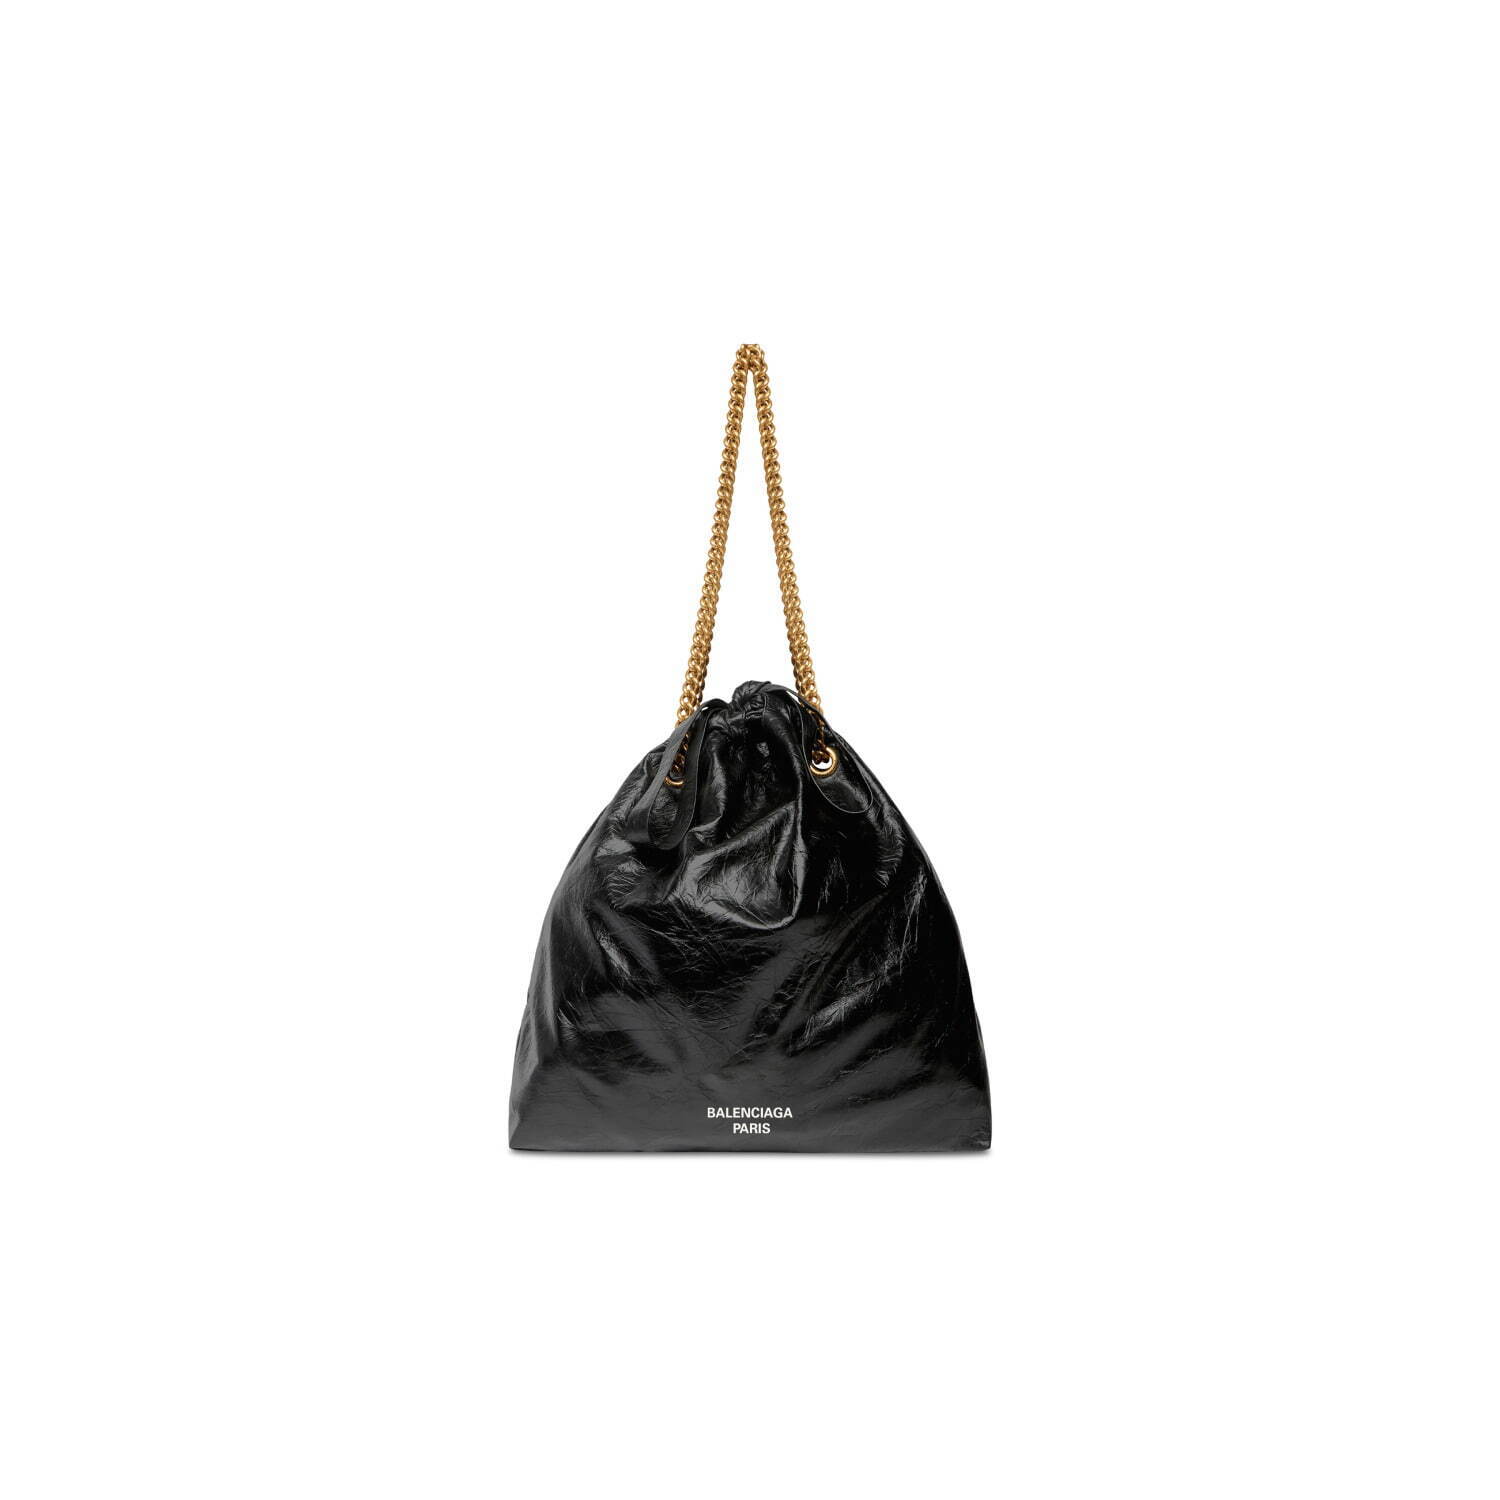 バレンシアガ新作「クラッシュ トート」バッグ、ゴミ袋着想のボディ